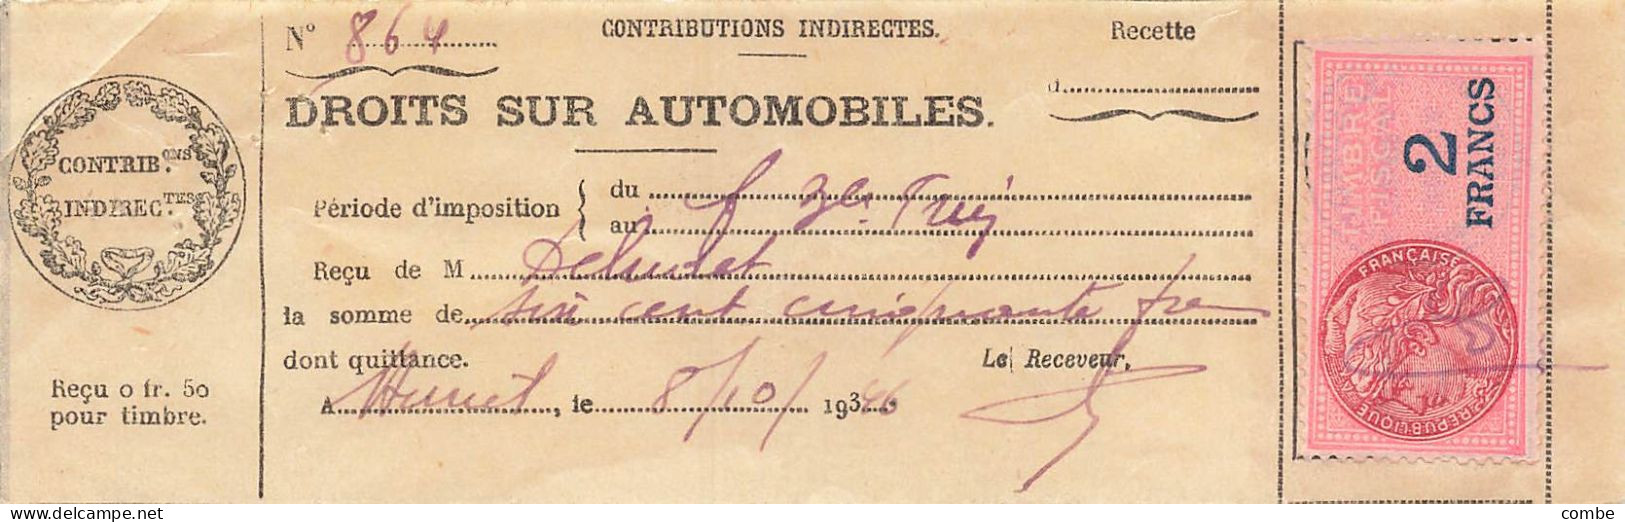 DROITS SUR AUTOMOBILES. VAILLY, AUXERRE. 1931,36,37 - Historische Dokumente